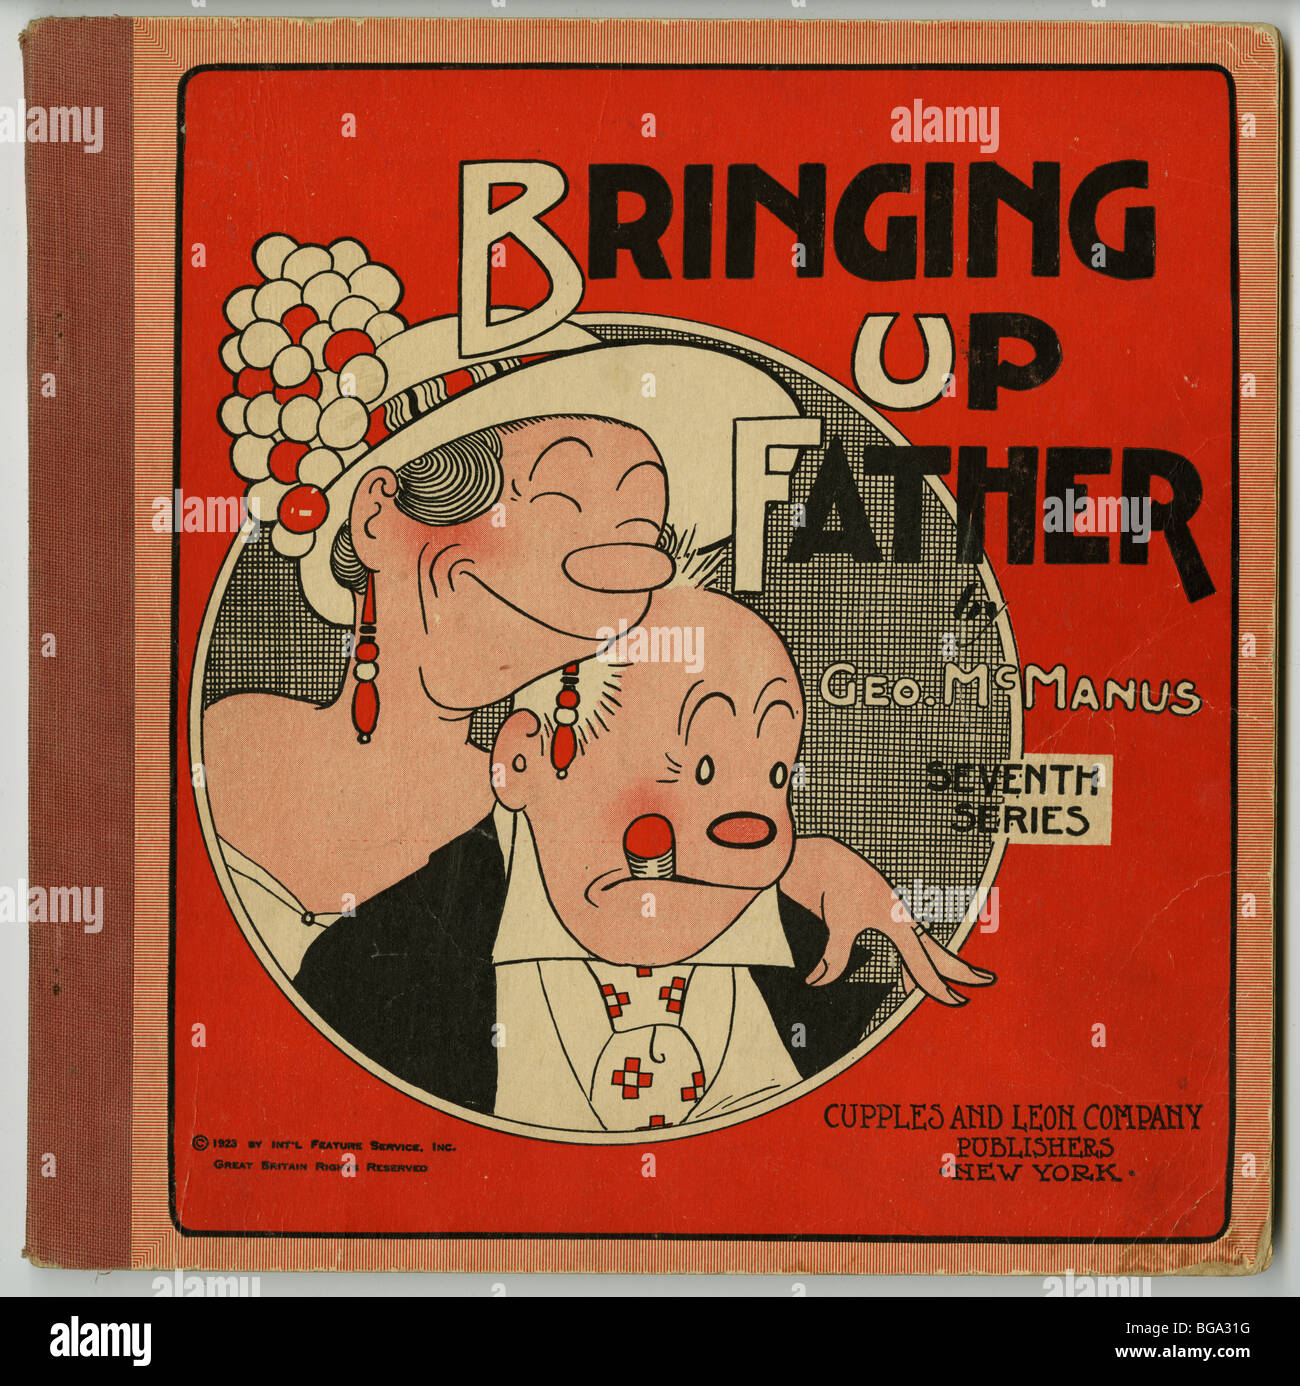 Portando il padre da George McManus, settima serie, 1923. Pubblicato da Cupples & Leon in New York. Foto Stock